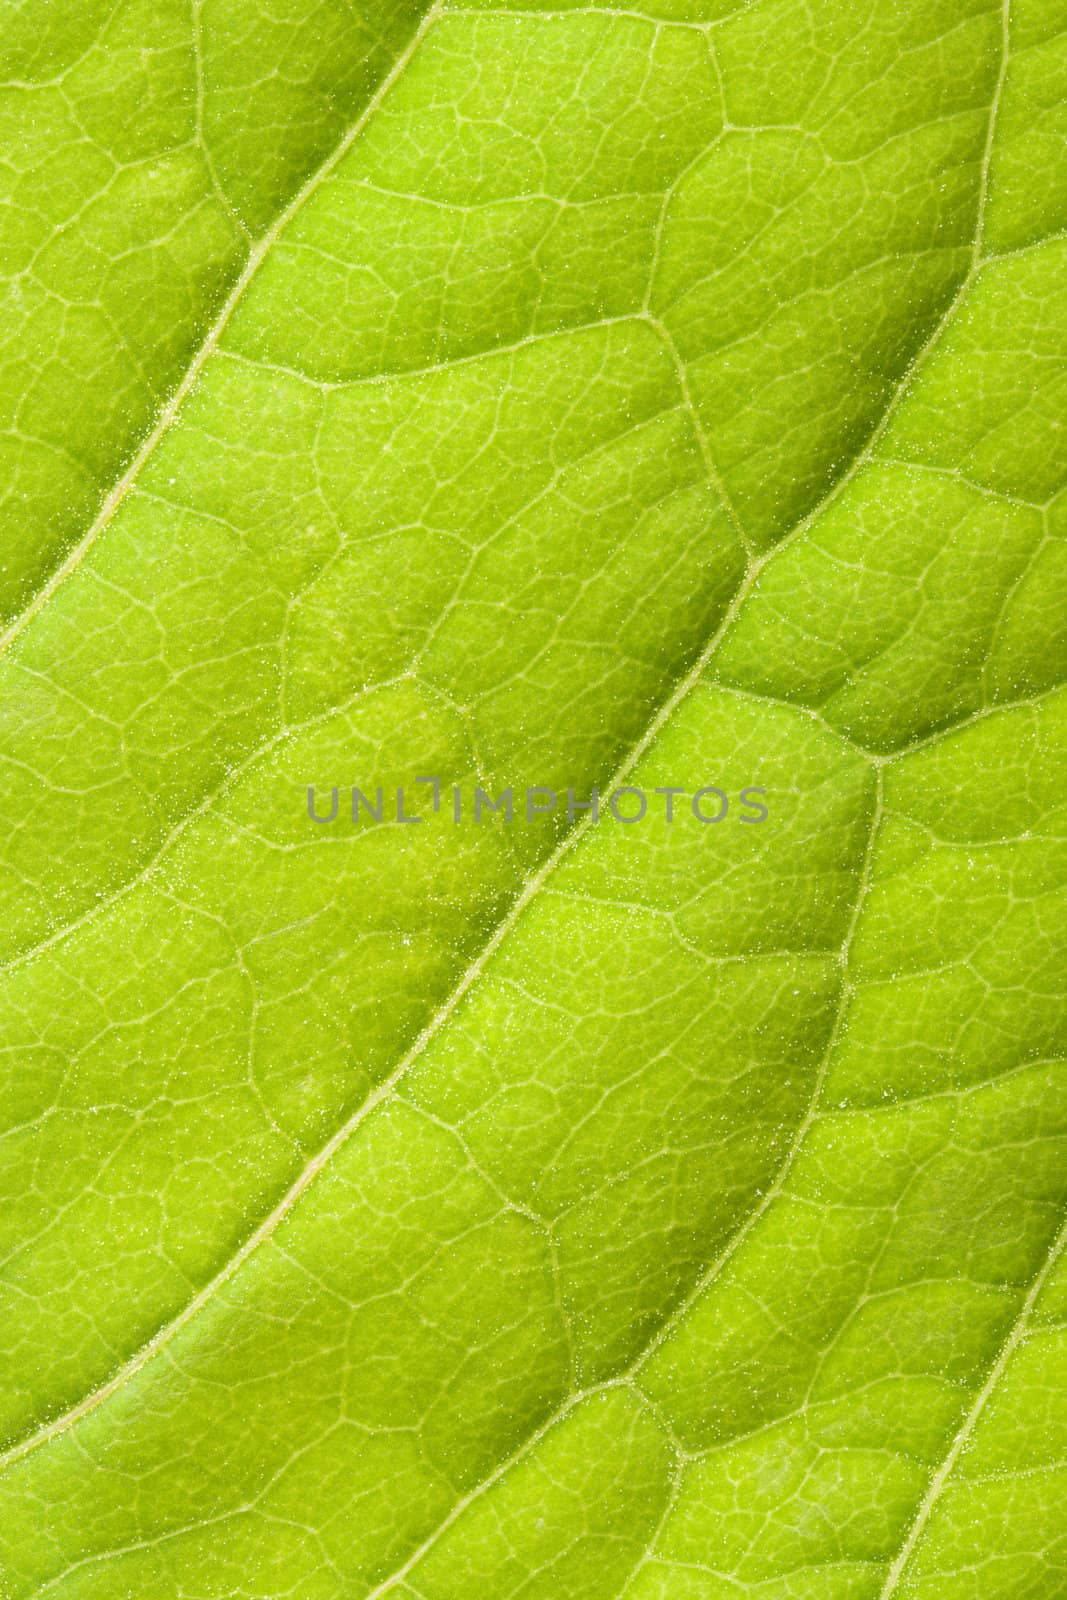 Green leaf close up by dimol